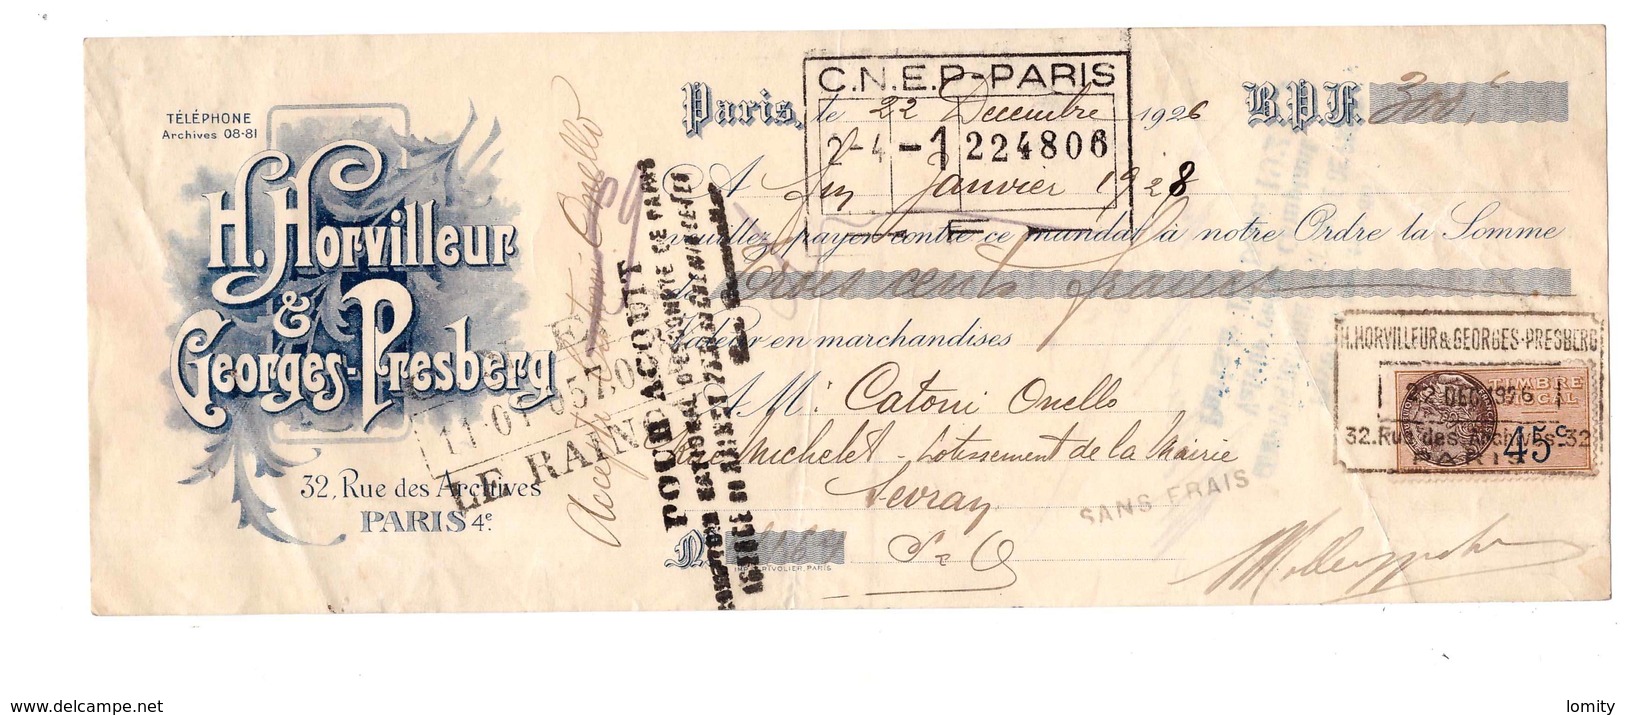 1926 Facture Horvilleur & Georges Presberg 32 Rue Des Archives Paris 4eme Mandat 300 Francs Timbre Fiscal France - Lettres De Change